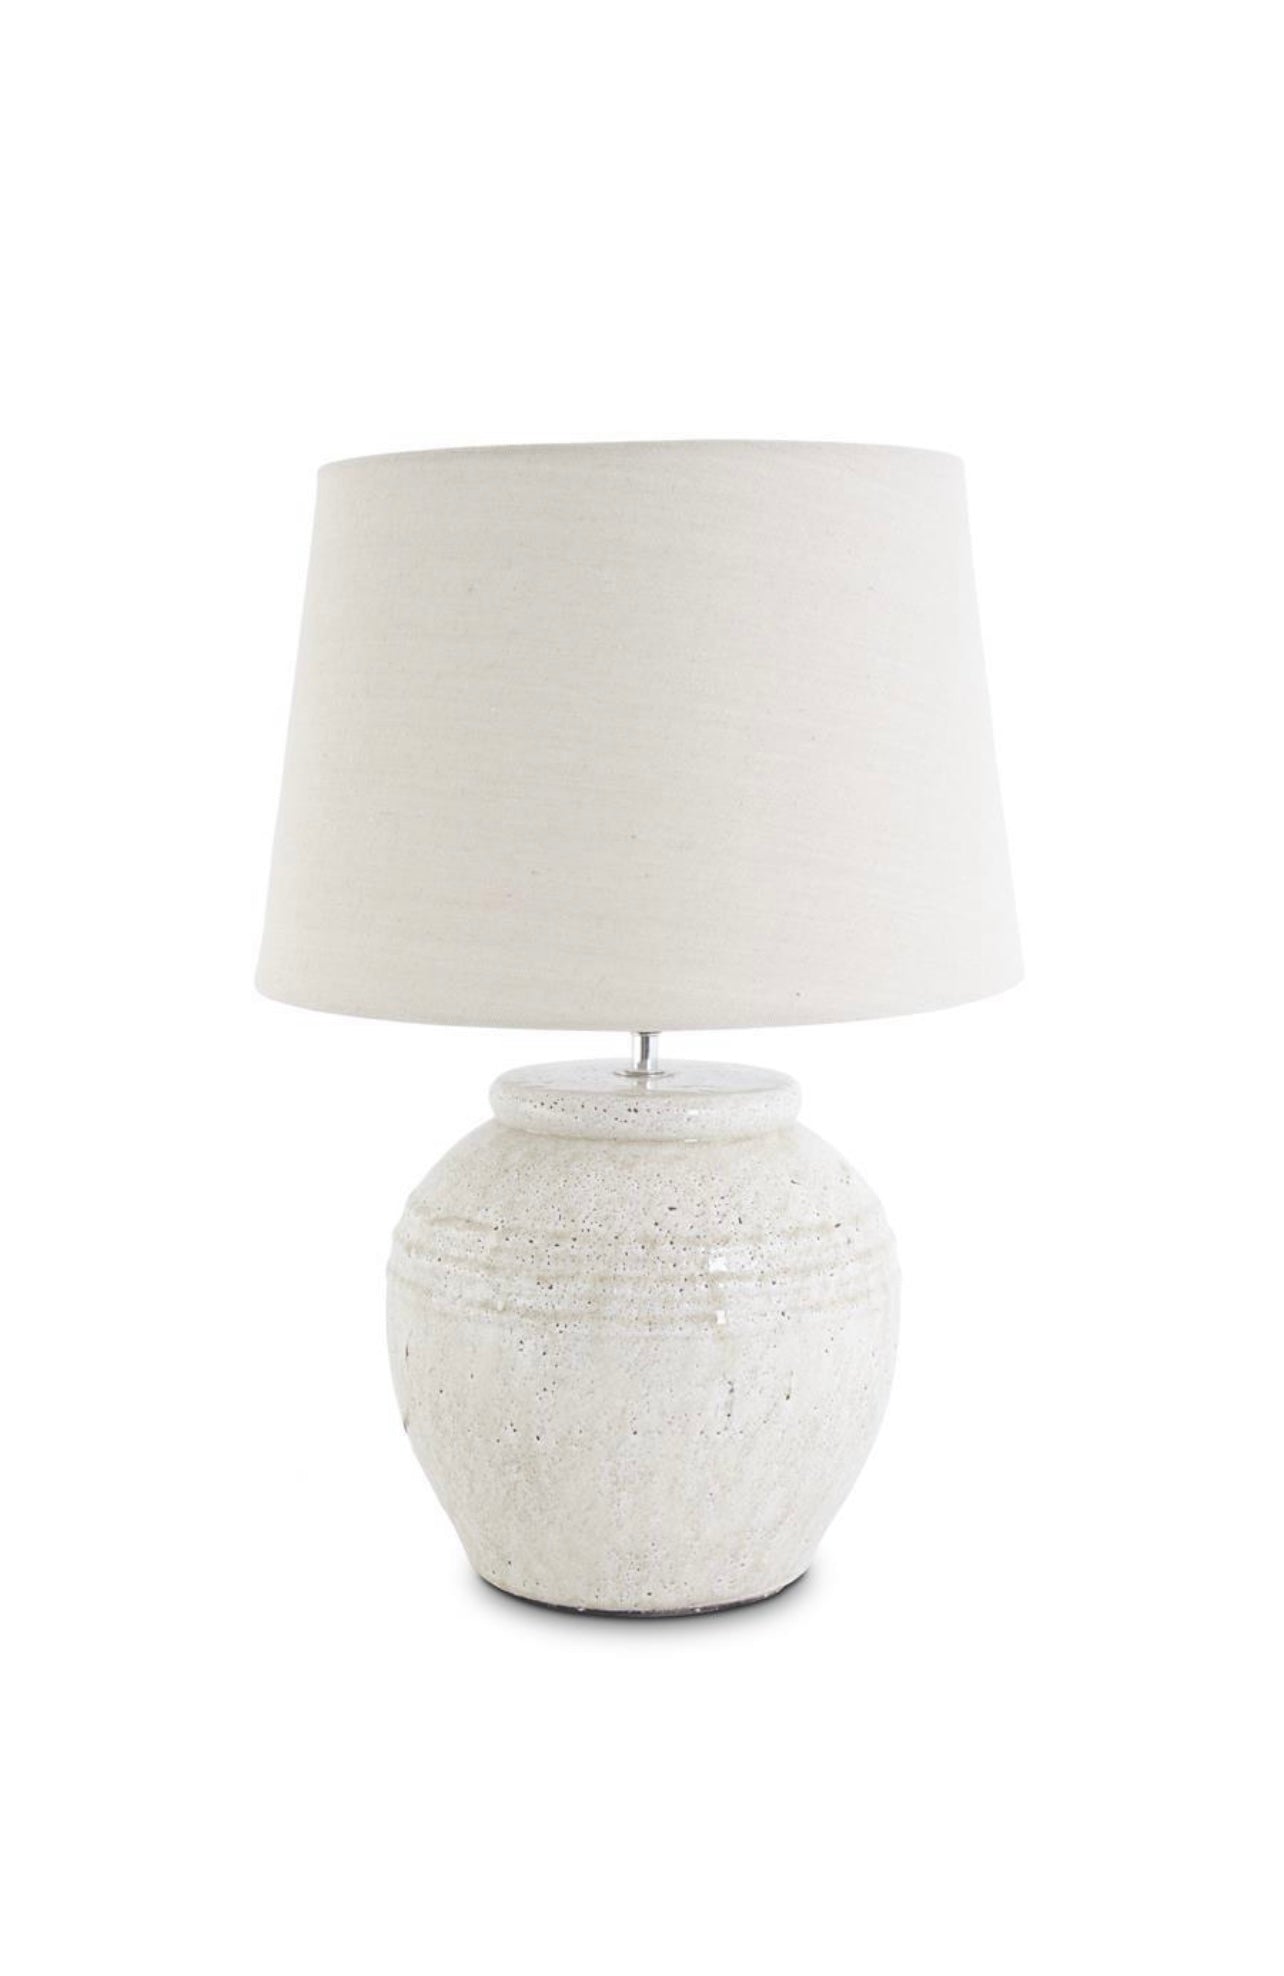 Round Cream Crackled Ceramic Lamp with Cream Shade